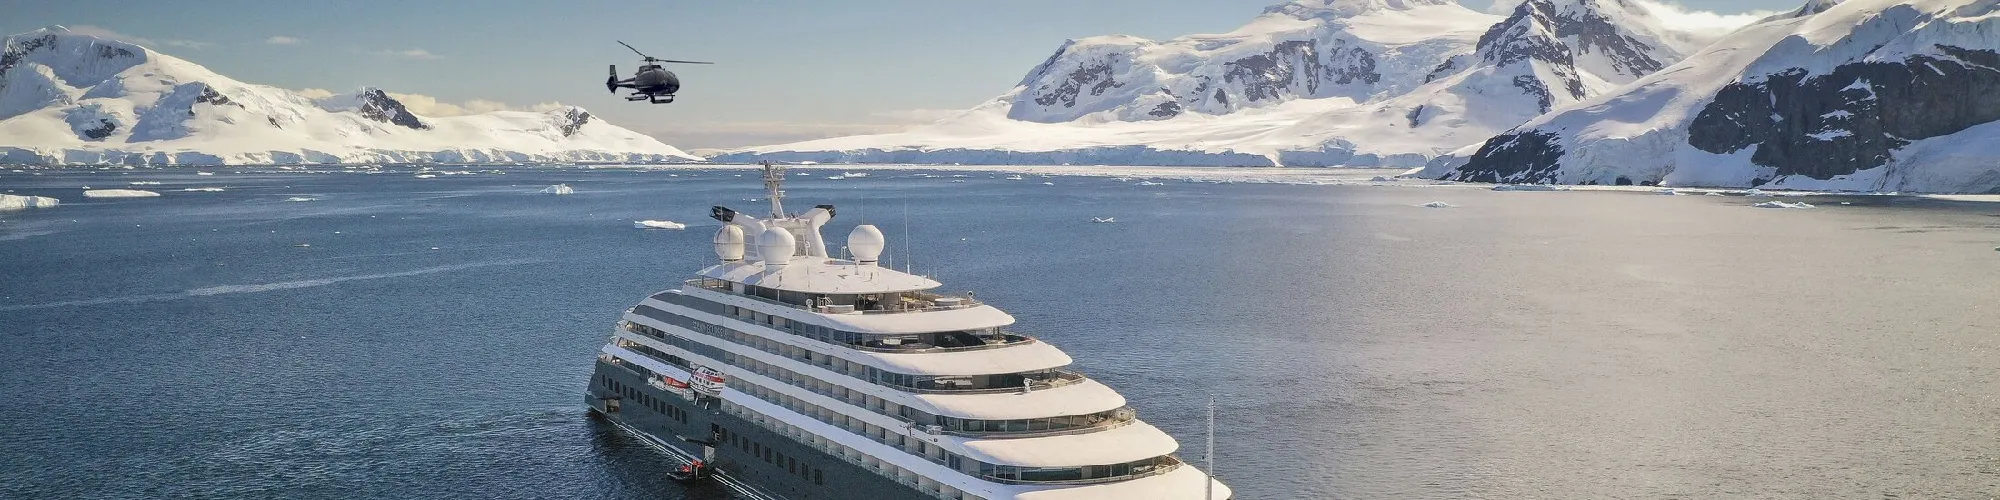 Scenic Luxury Cruises background image